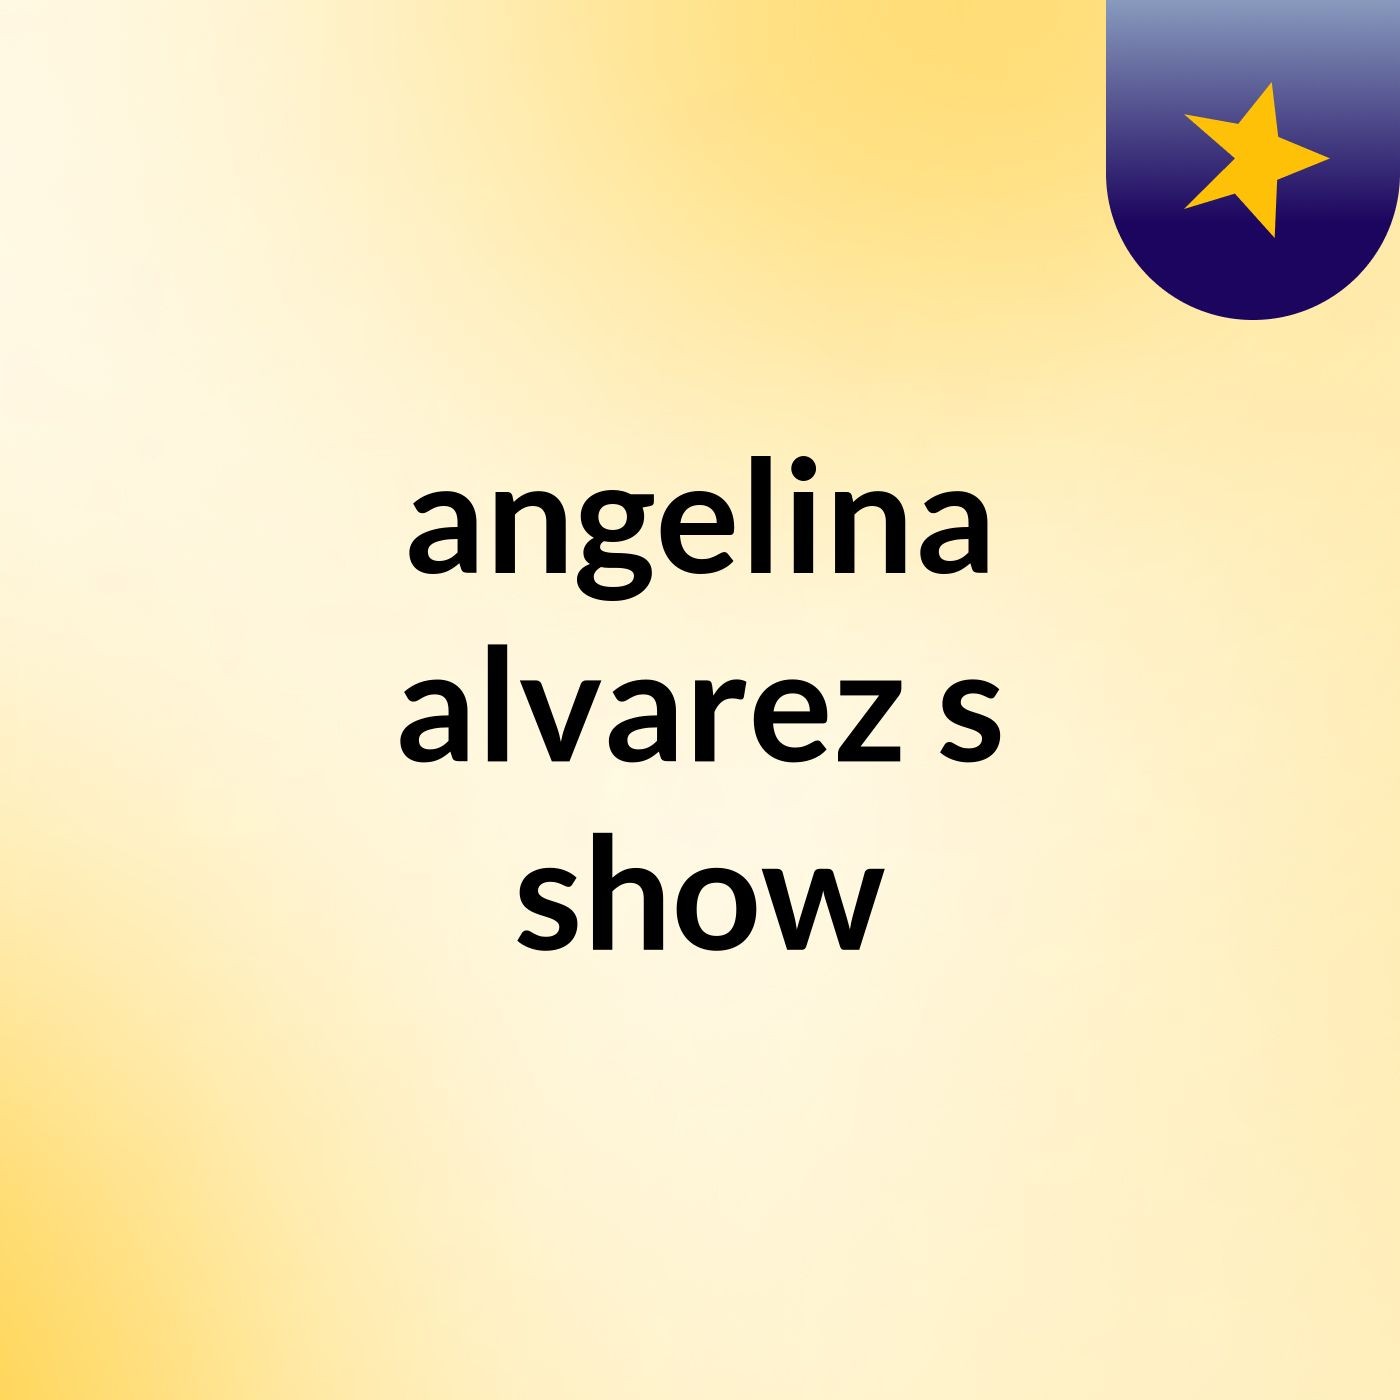 Episode 2 - angelina alvarez's show